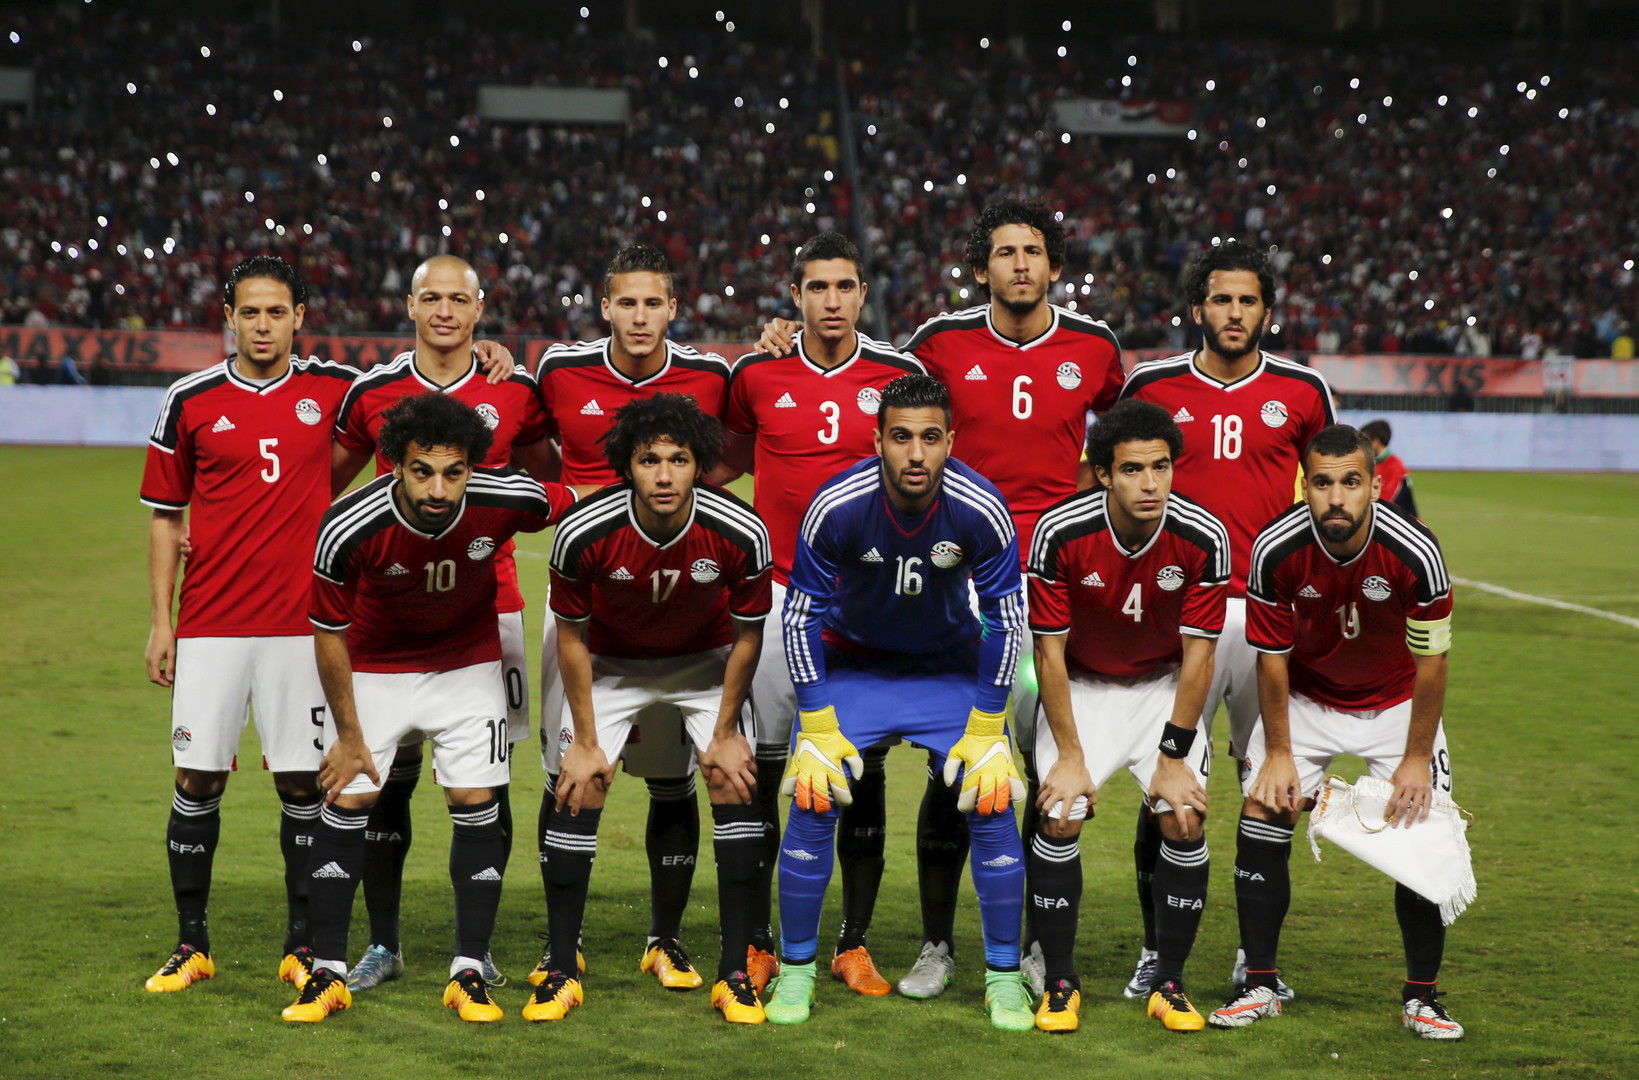 NOW تردد القنوات المفتوحة الناقلة لمباراة مصر والسودان فى كأس أمم إفريقيا 2022 بدون تشفير